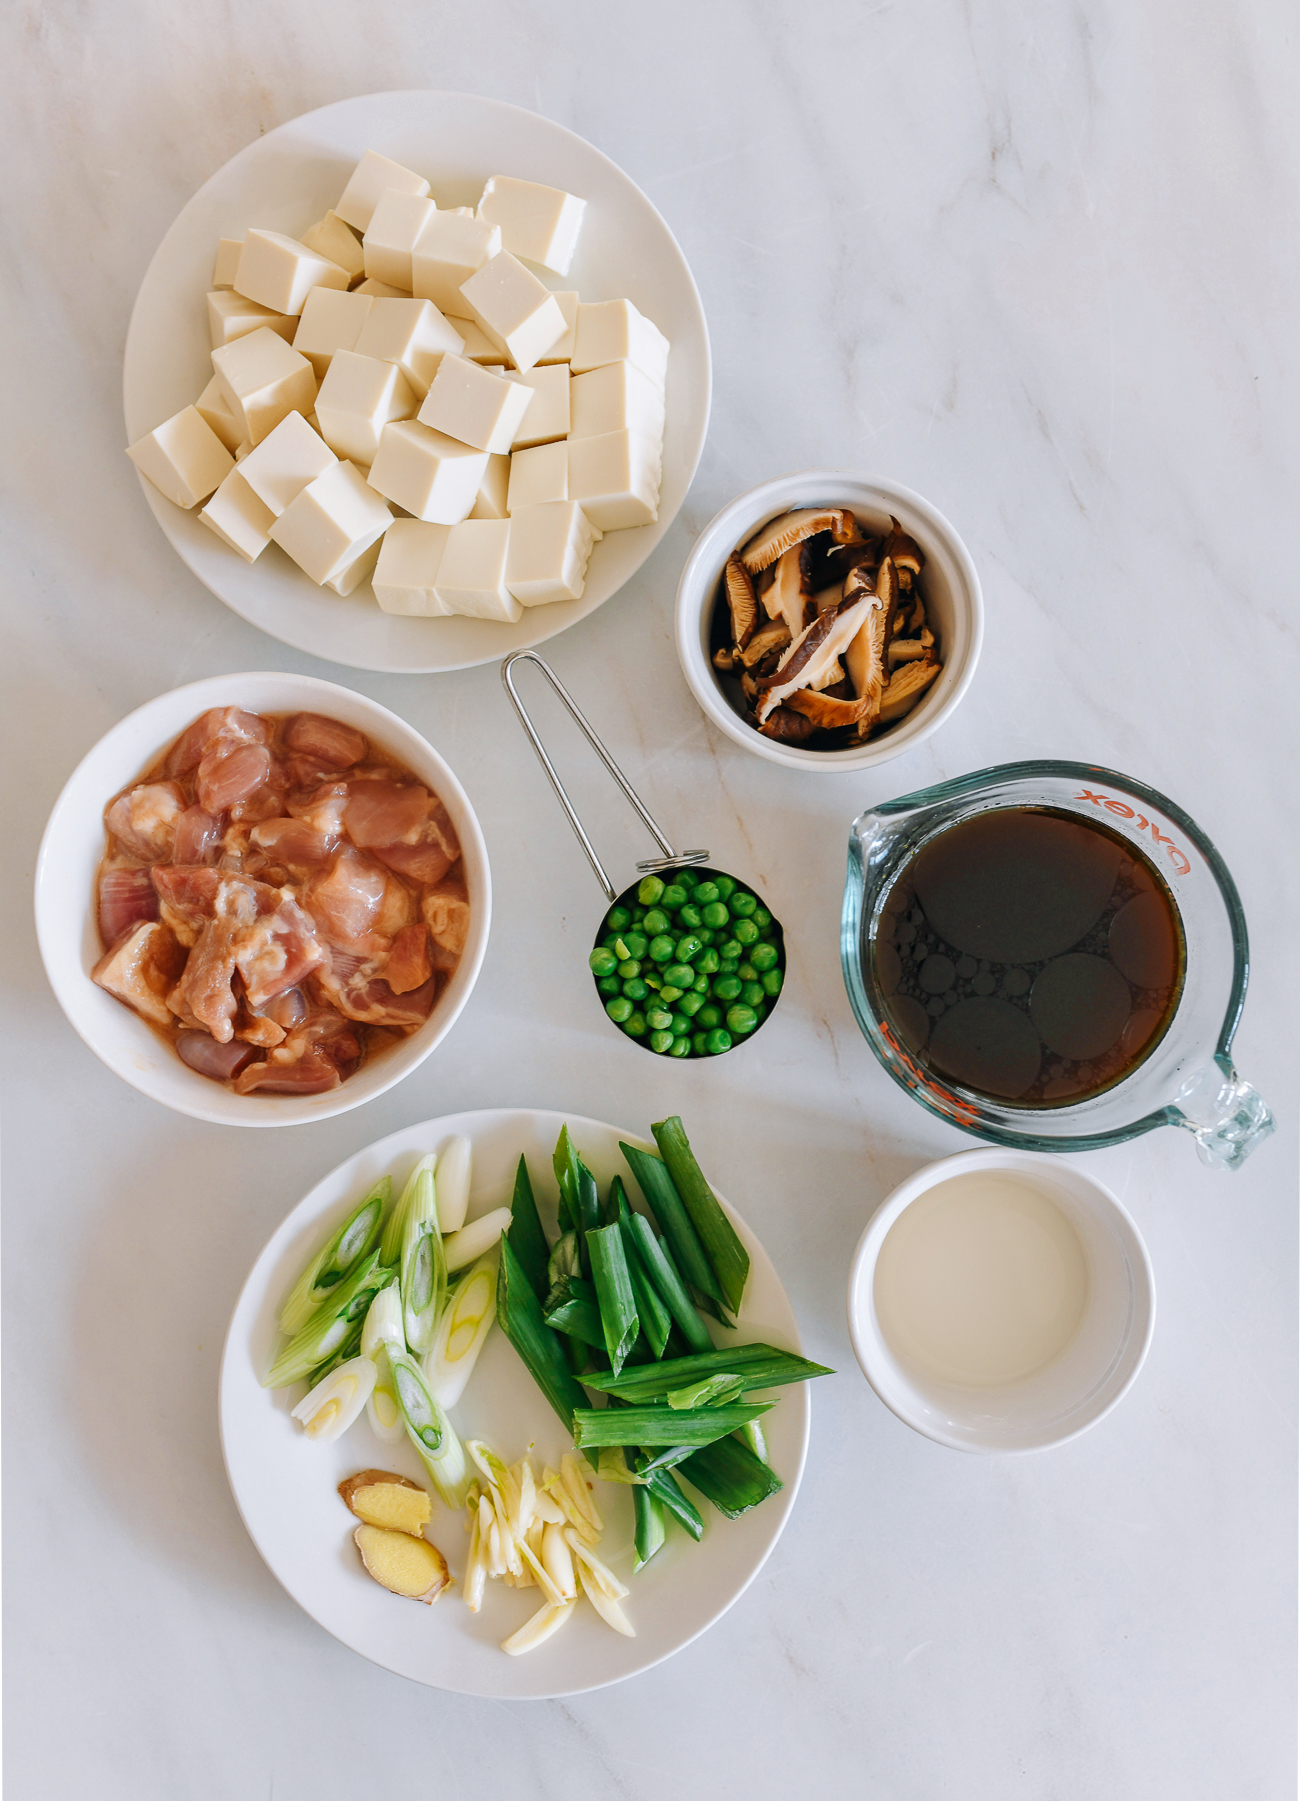 Chicken and soft tofu casserole ingredients